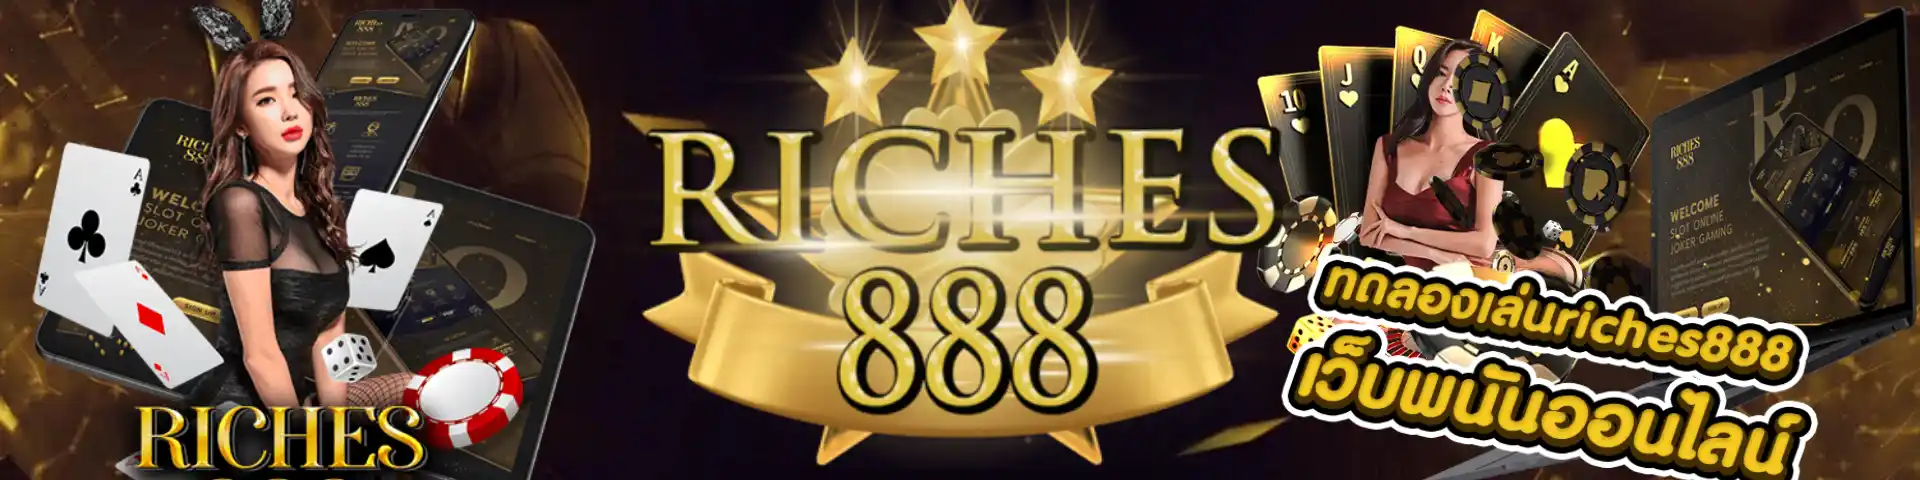 Riches888 ดาวน์โหลด